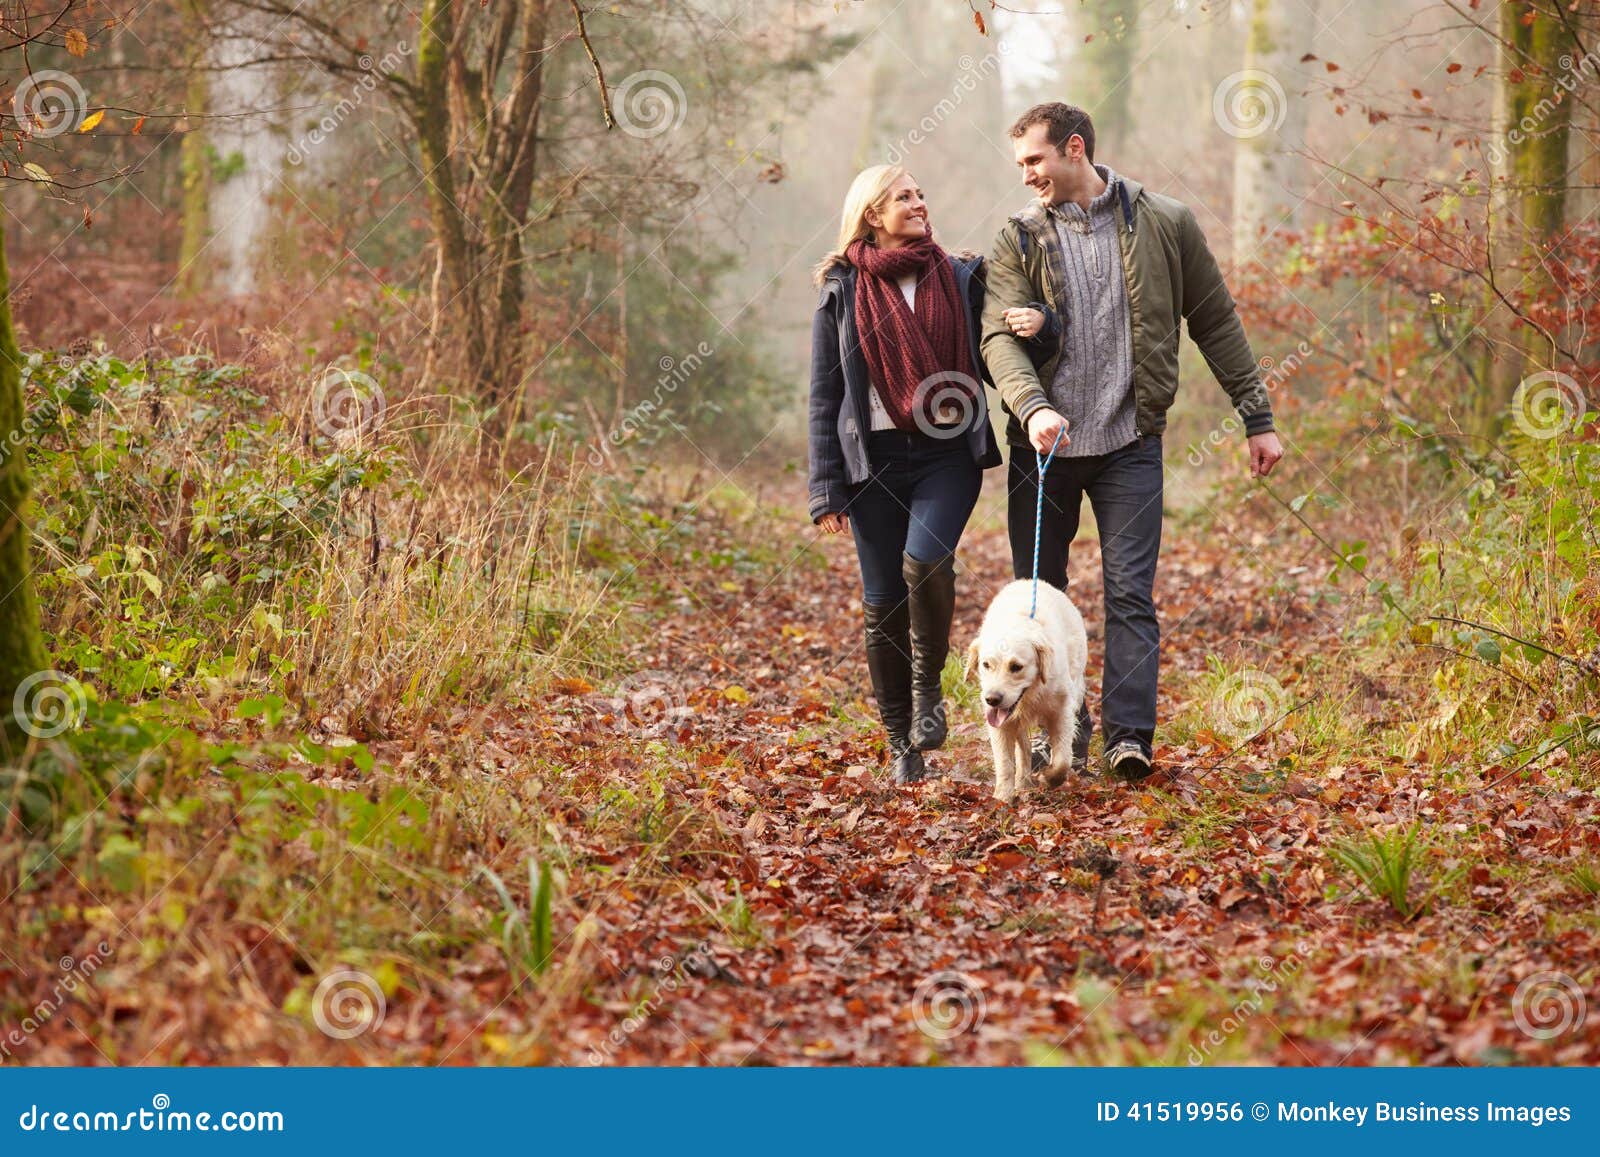 couple walking dog through winter woodland